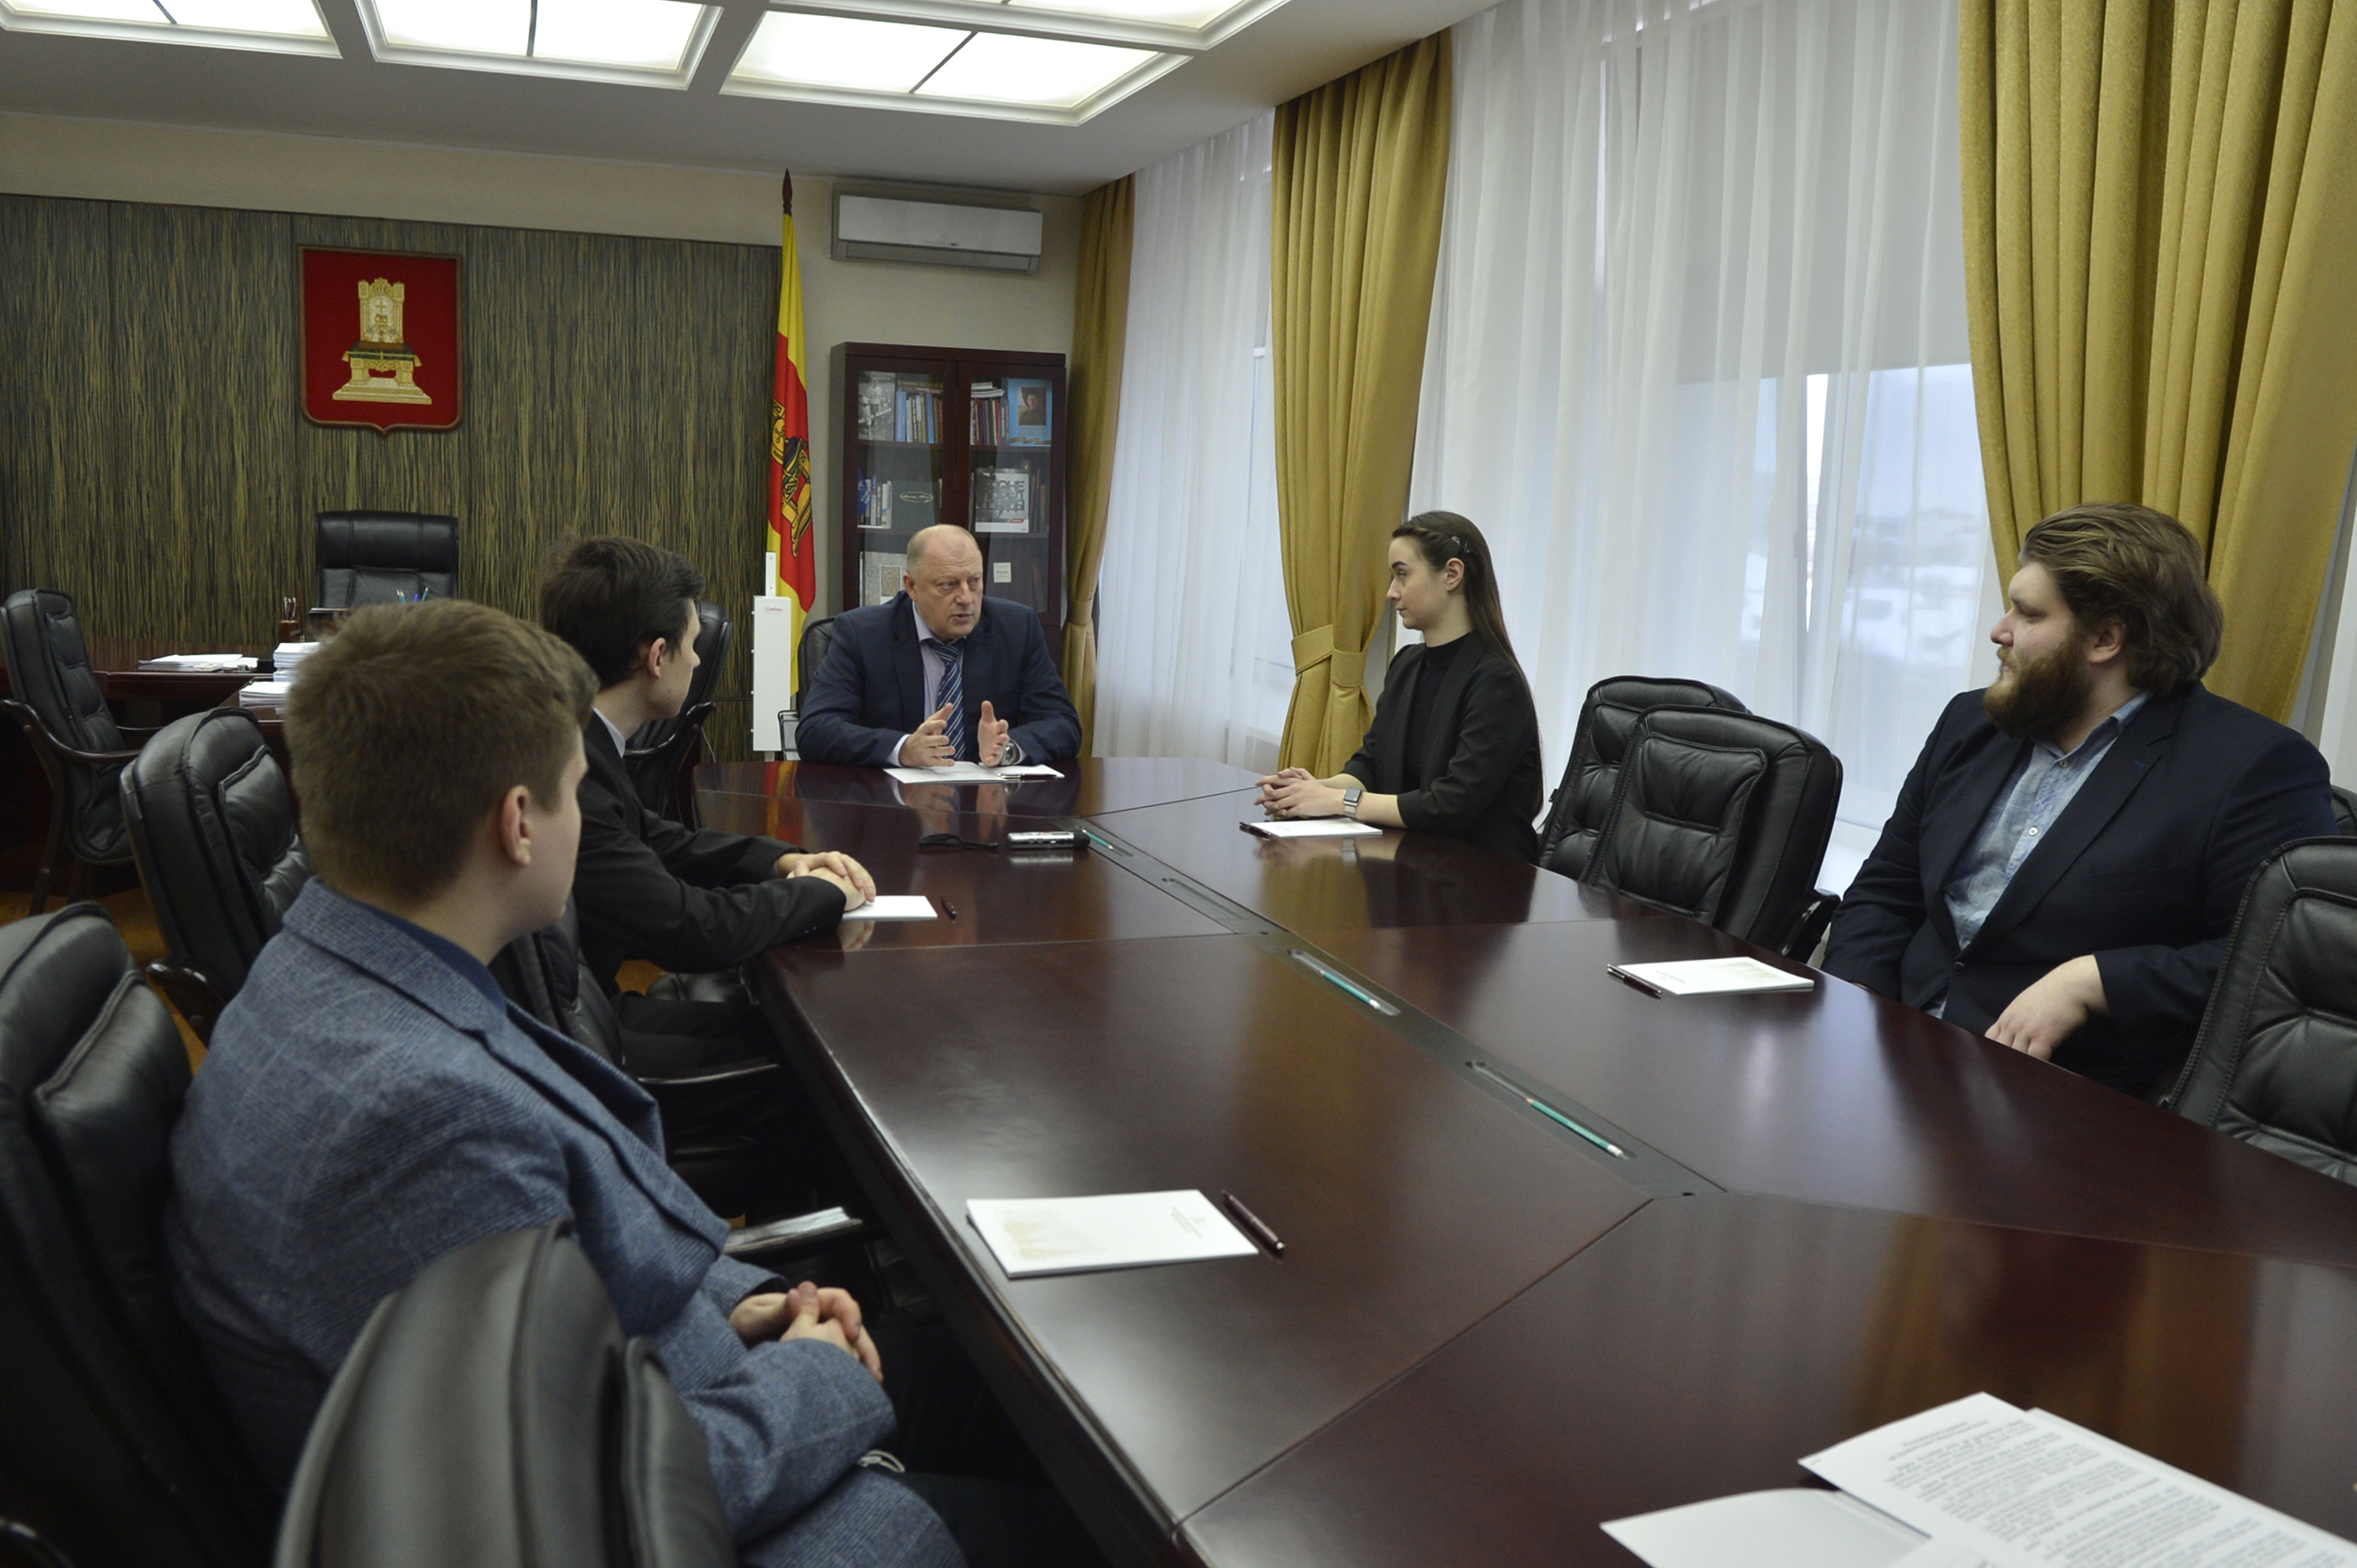 Руководство областного парламента провело встречу со студентами - членами Молодежной палаты